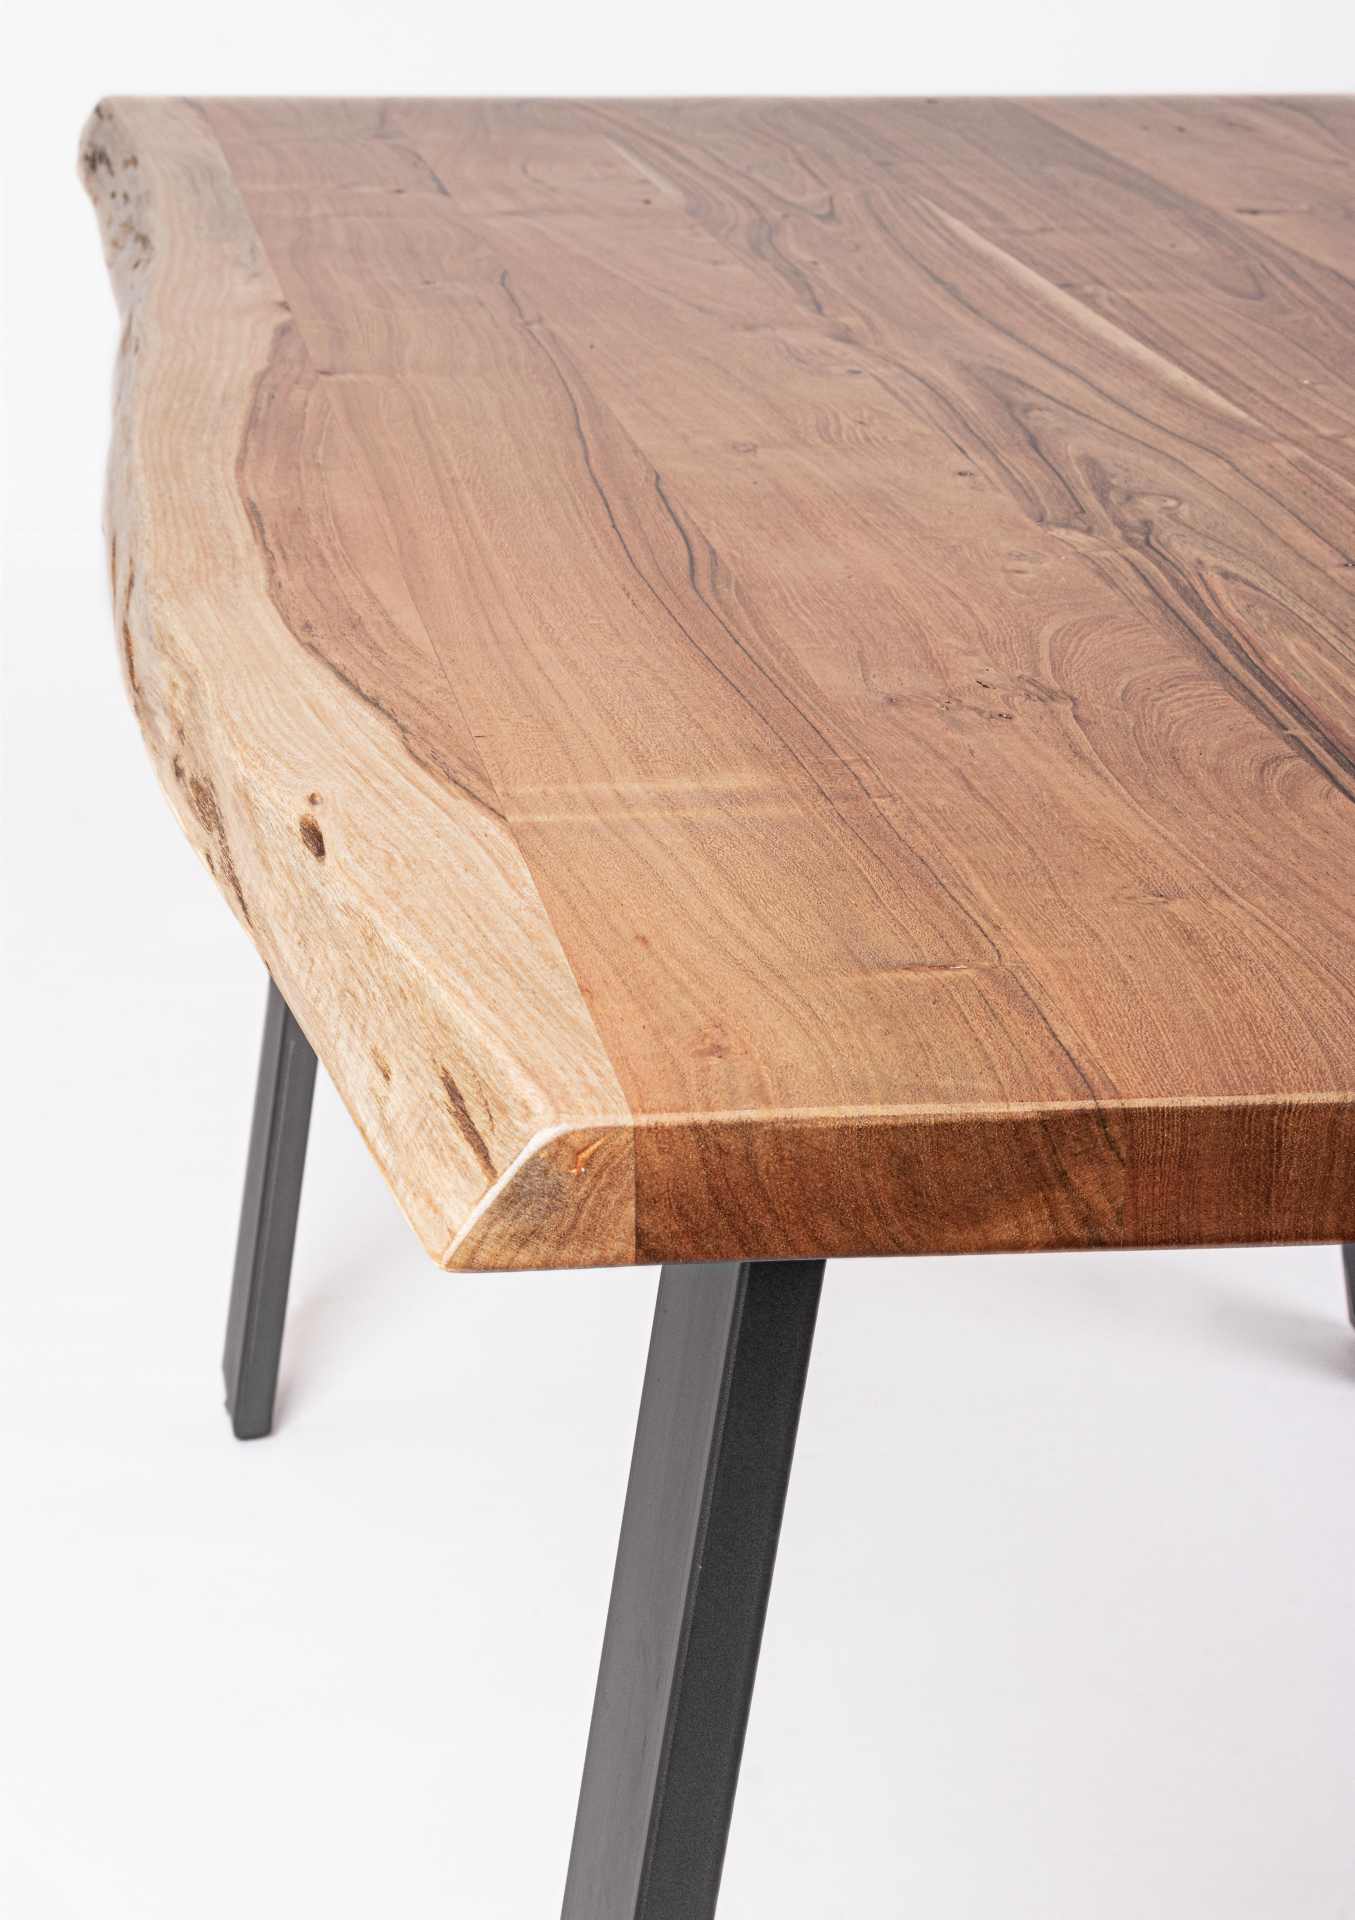 Der Esstisch Aron überzeugt mit seinem moderndem Design gefertigt wurde er aus Akazienholz, welches einen natürlichen Farbton besitzt. Das Gestell des Tisches ist aus Metall und ist Schwarz. Der Tisch besitzt eine Breite von 160 cm.